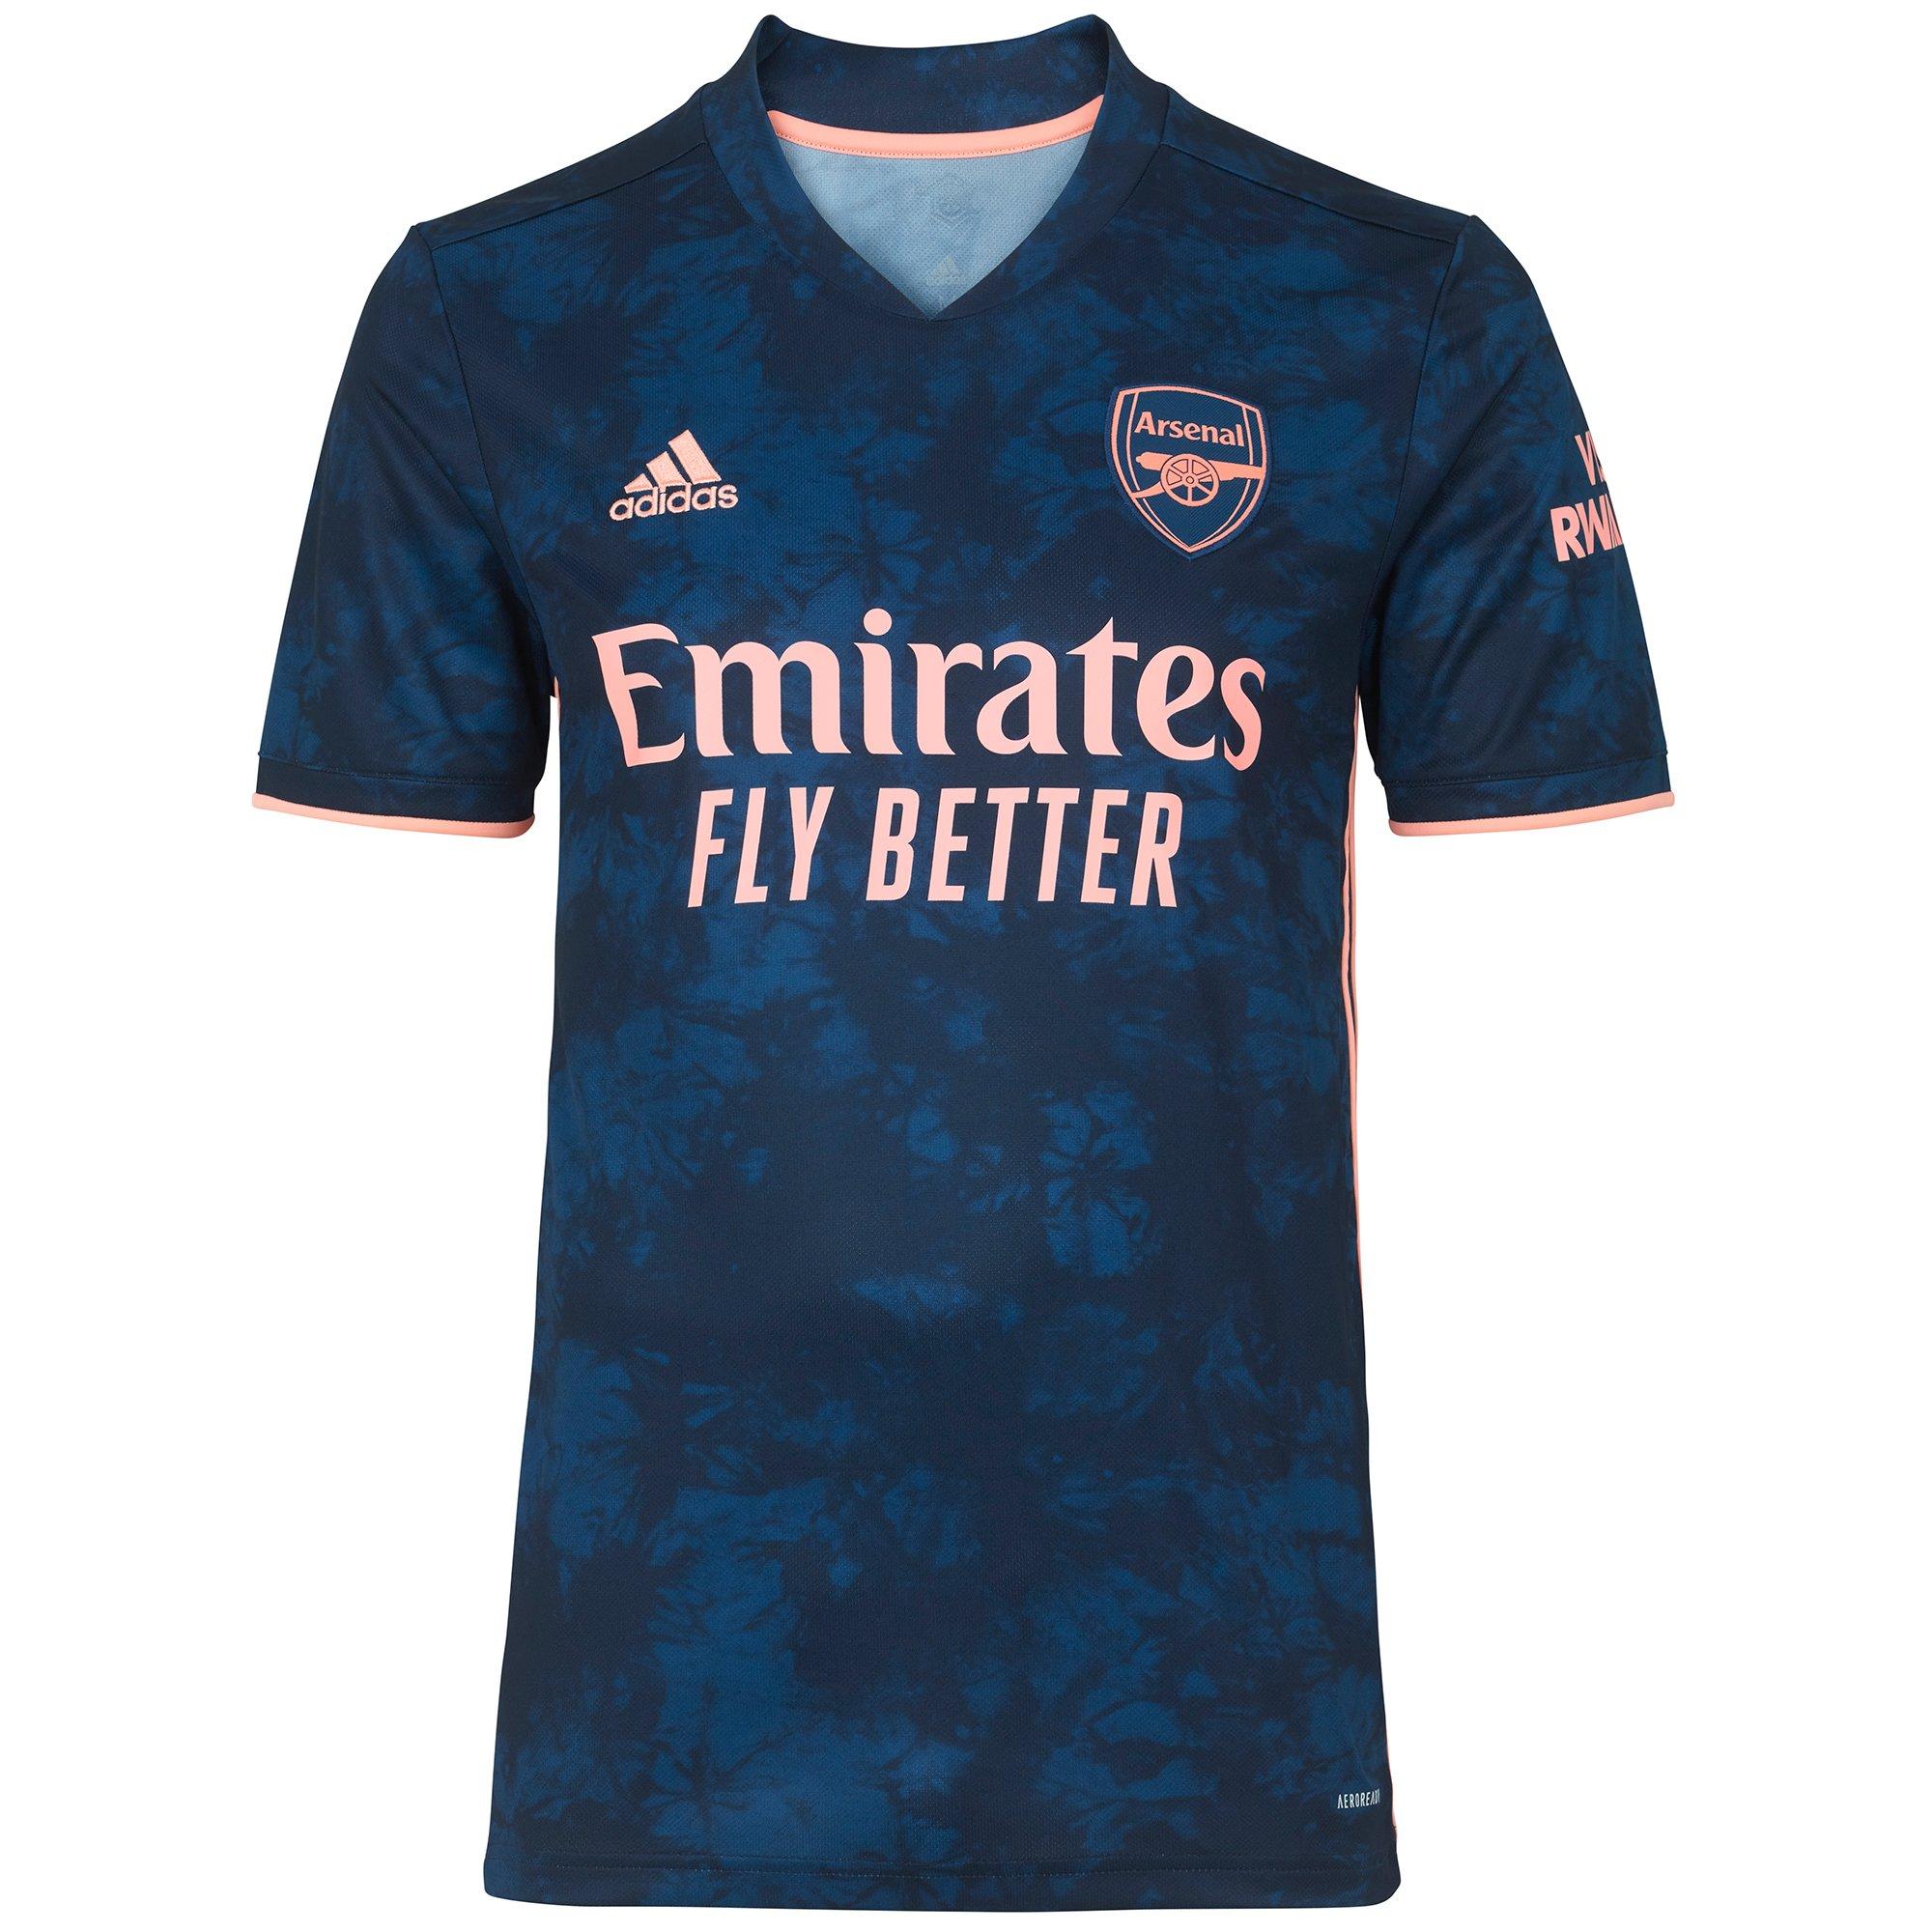 Arsenal Junior 20/21 Third Shirt 9-10, Blue - Arsenal Kit Store